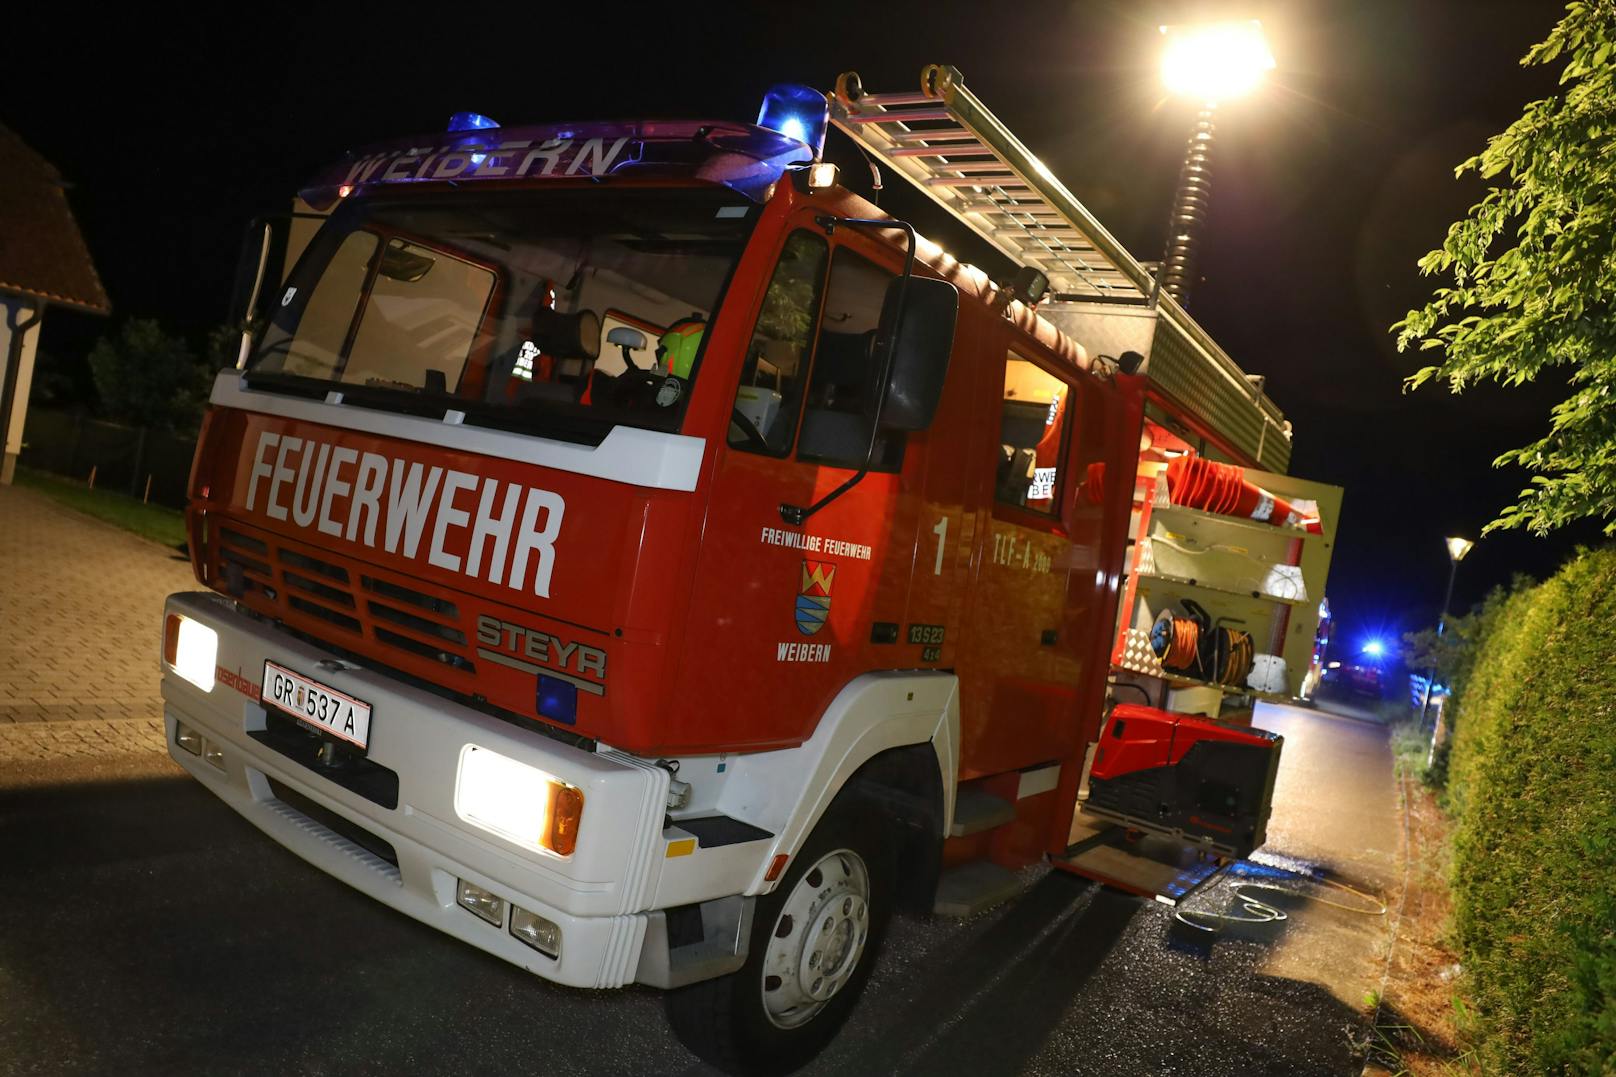 Die Feuerwehr stand in der Nacht auf Dienstag bei einem Brand einer Gartenhütte auf dem Grundstück eines Einfamilienhauses in Weibern (Bezirk Grieskirchen) im Einsatz.